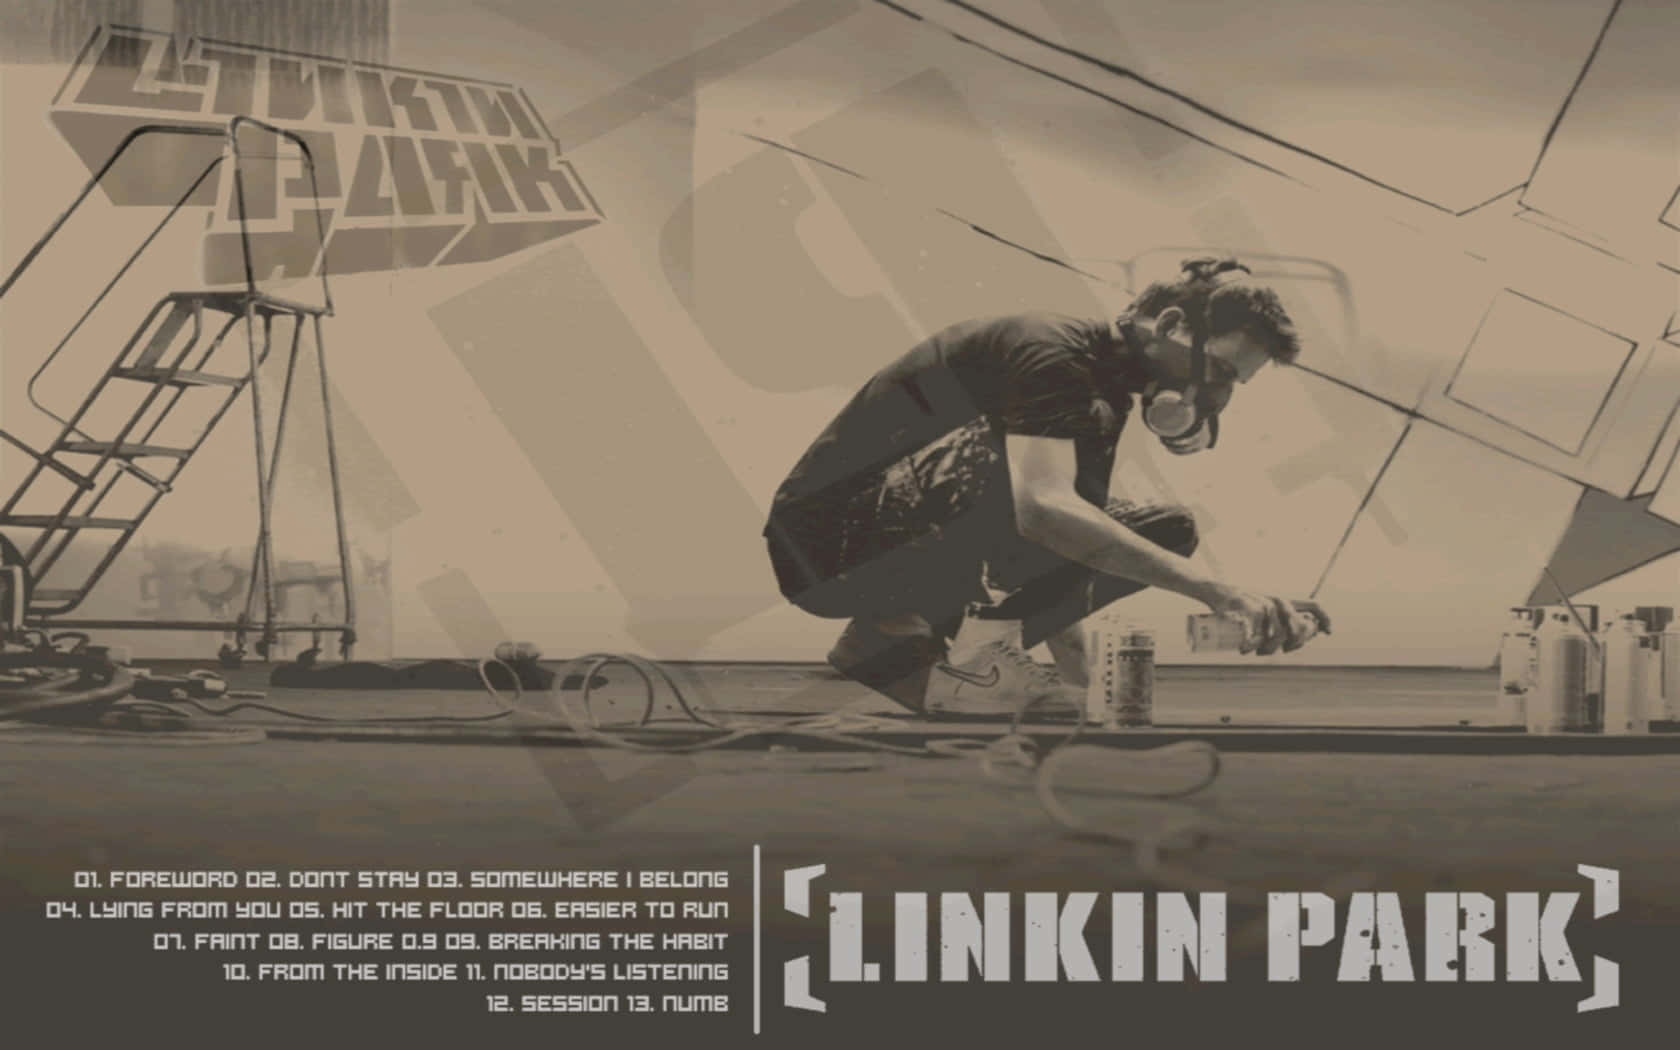 Fansrunt Om I Världen Firar Linkin Parks Arv. Wallpaper